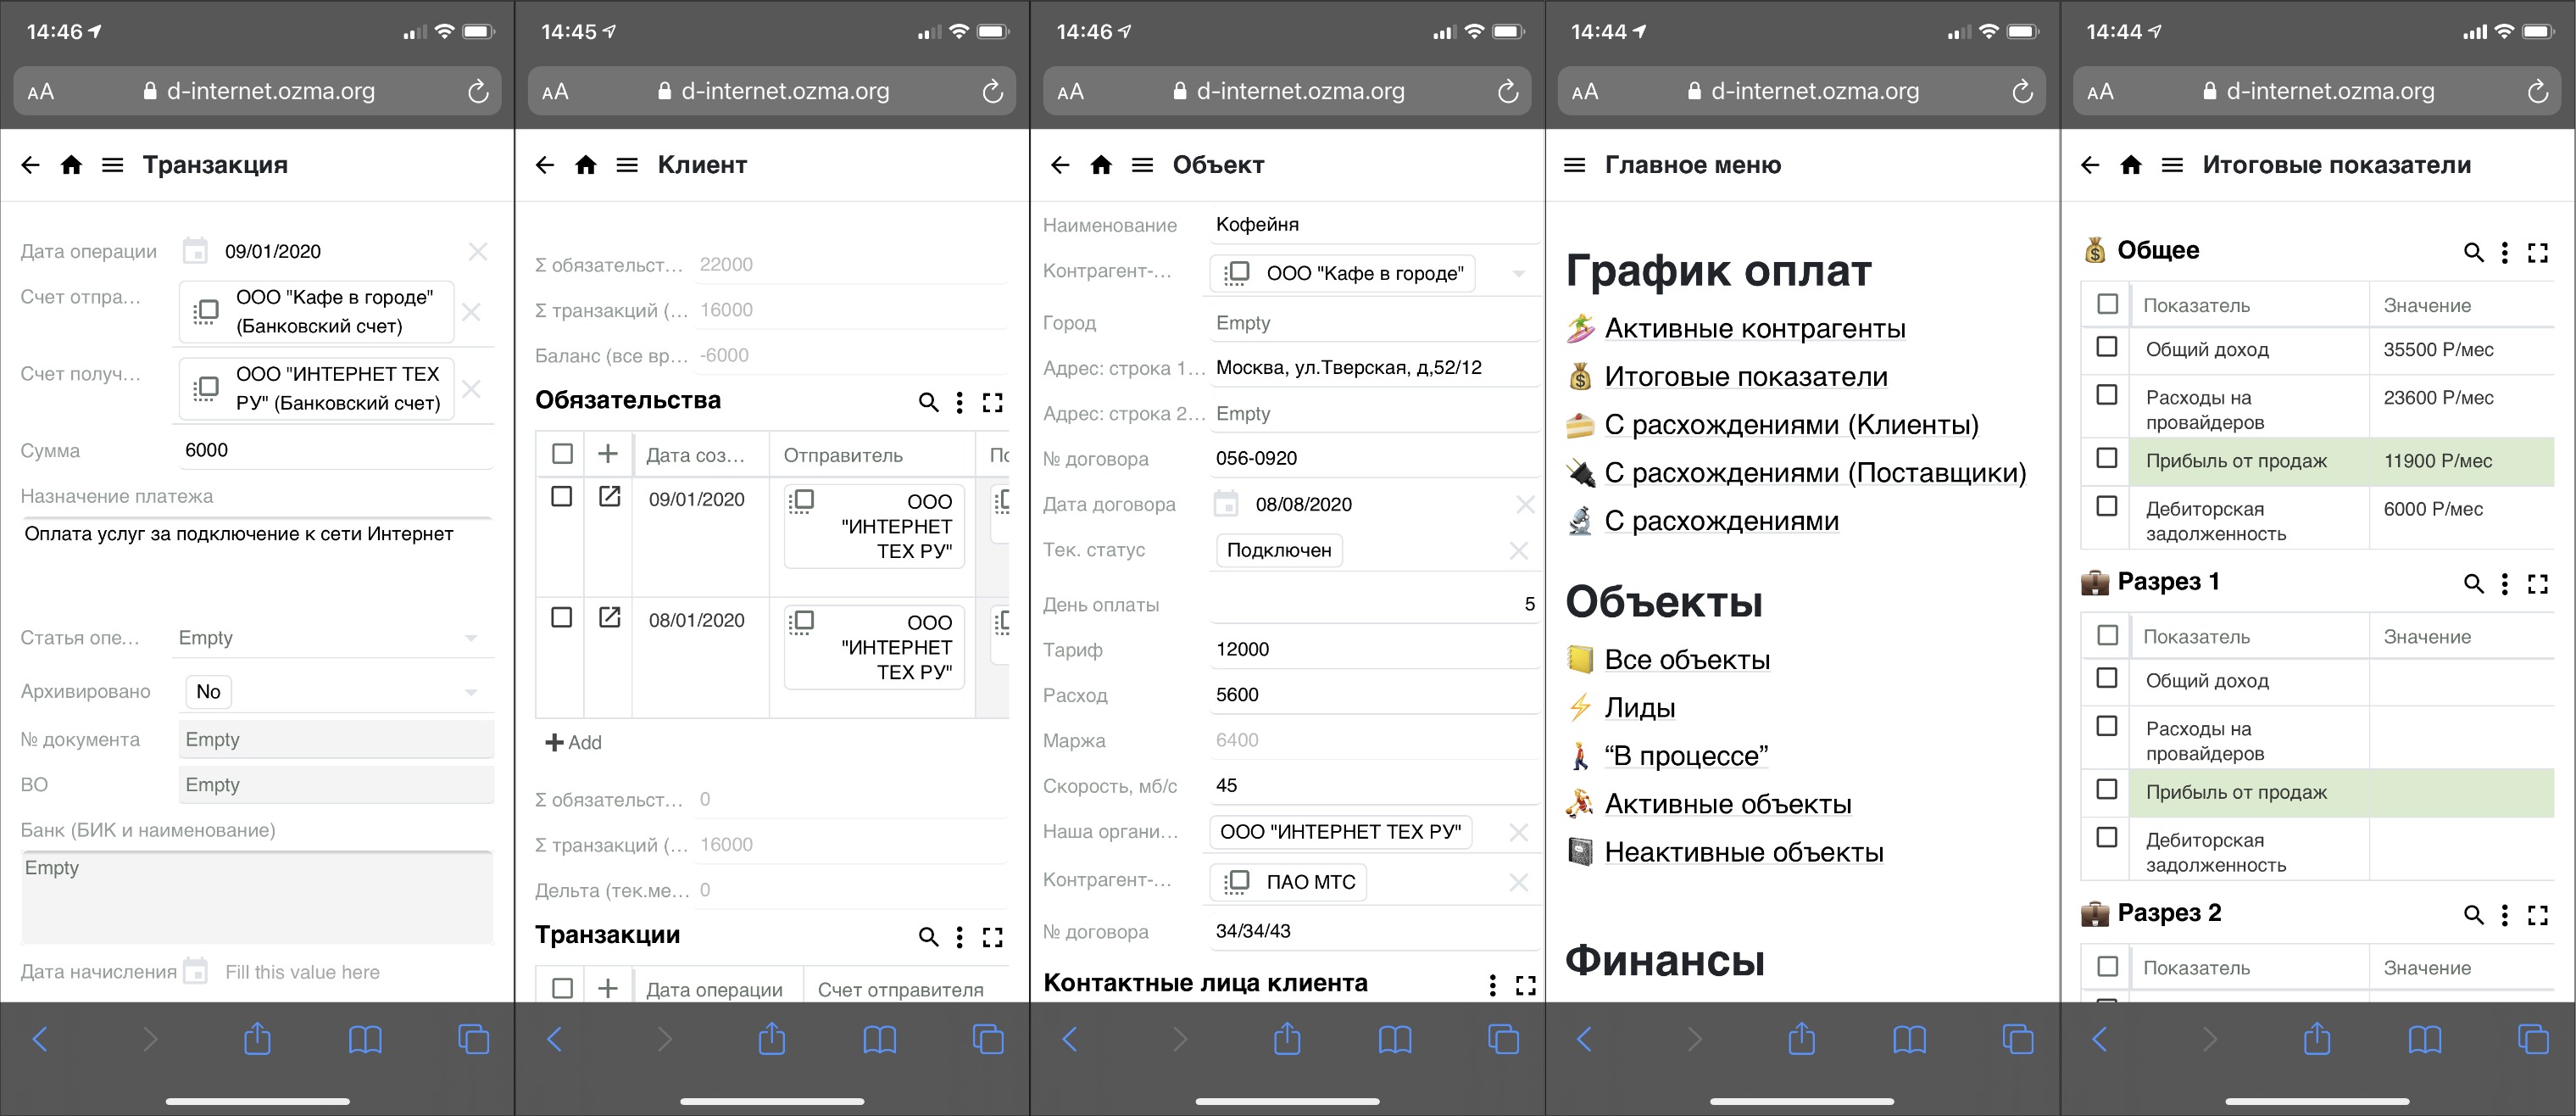 Скриншоты мобильной версии CRM для провайдера на ozma.io